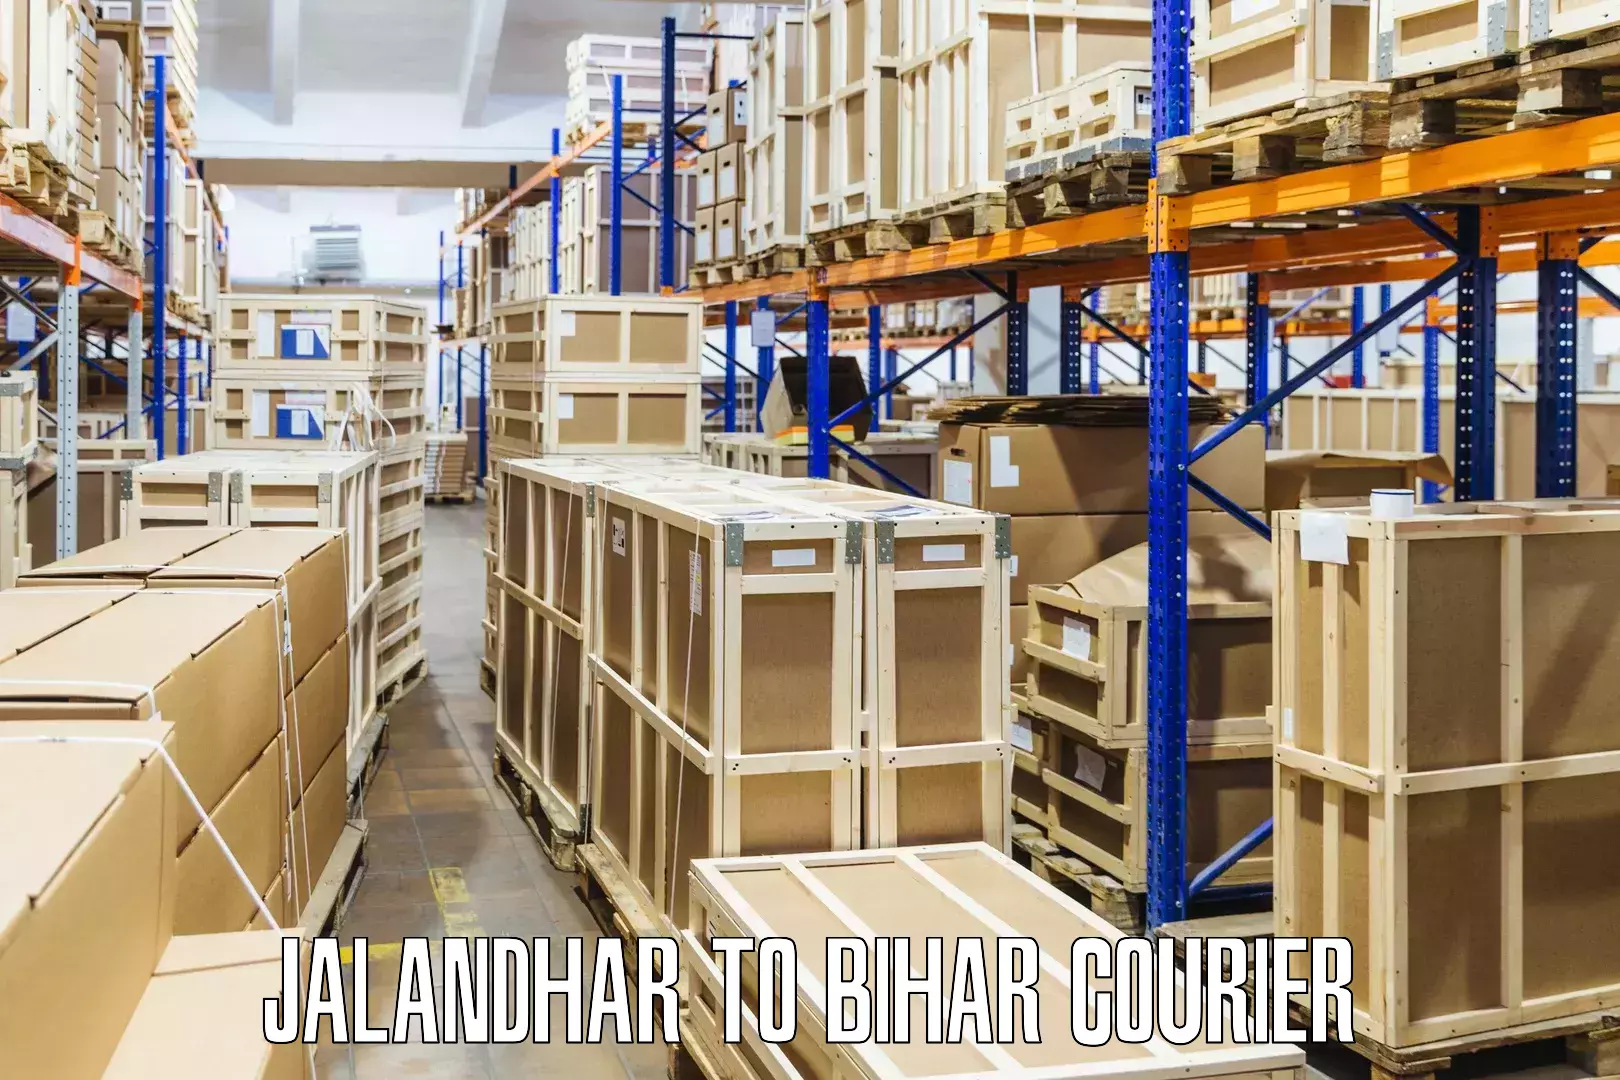 Efficient parcel service Jalandhar to Bihar